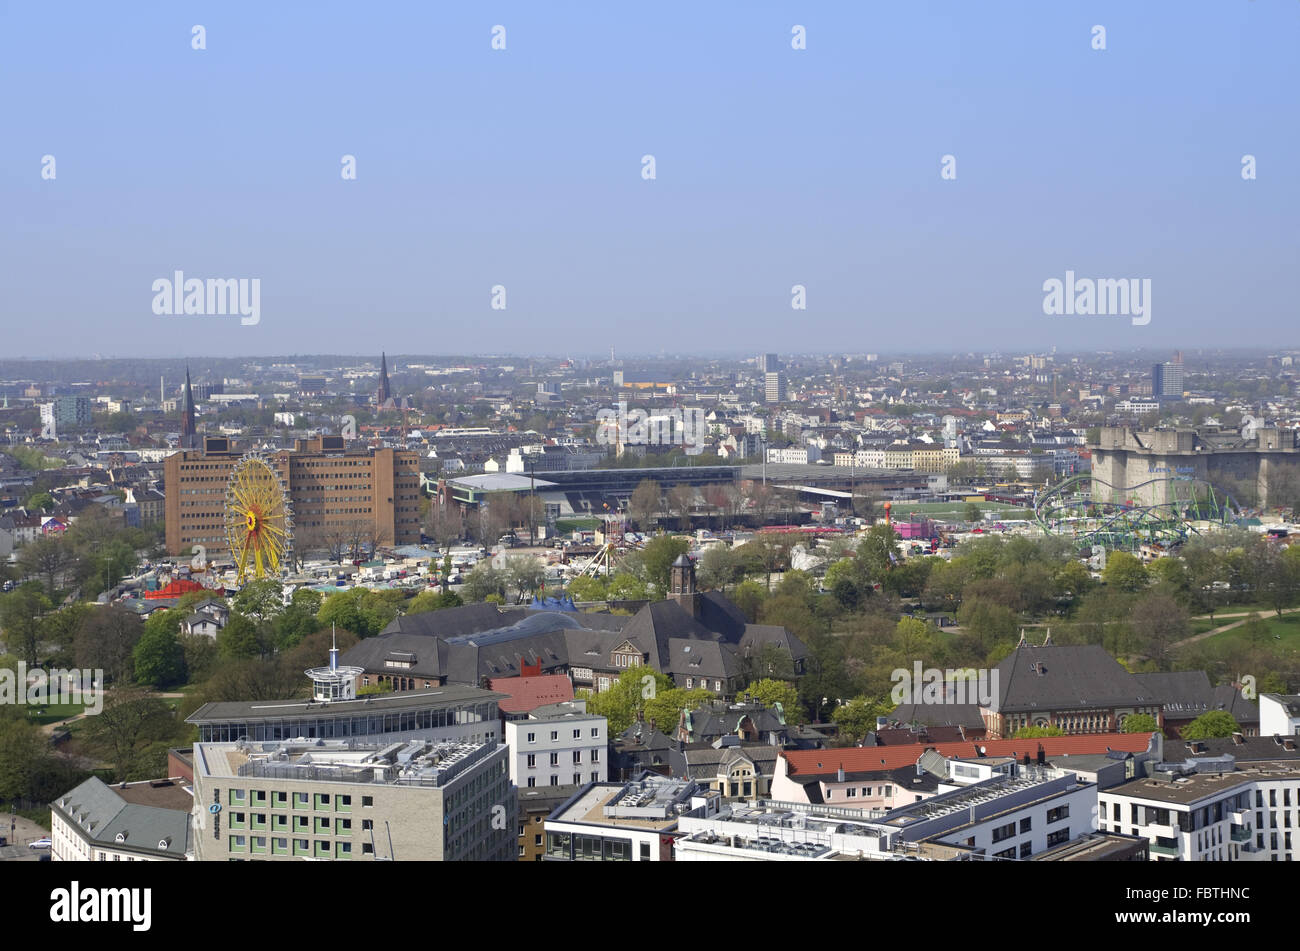 Hamburg aerial view Stock Photo